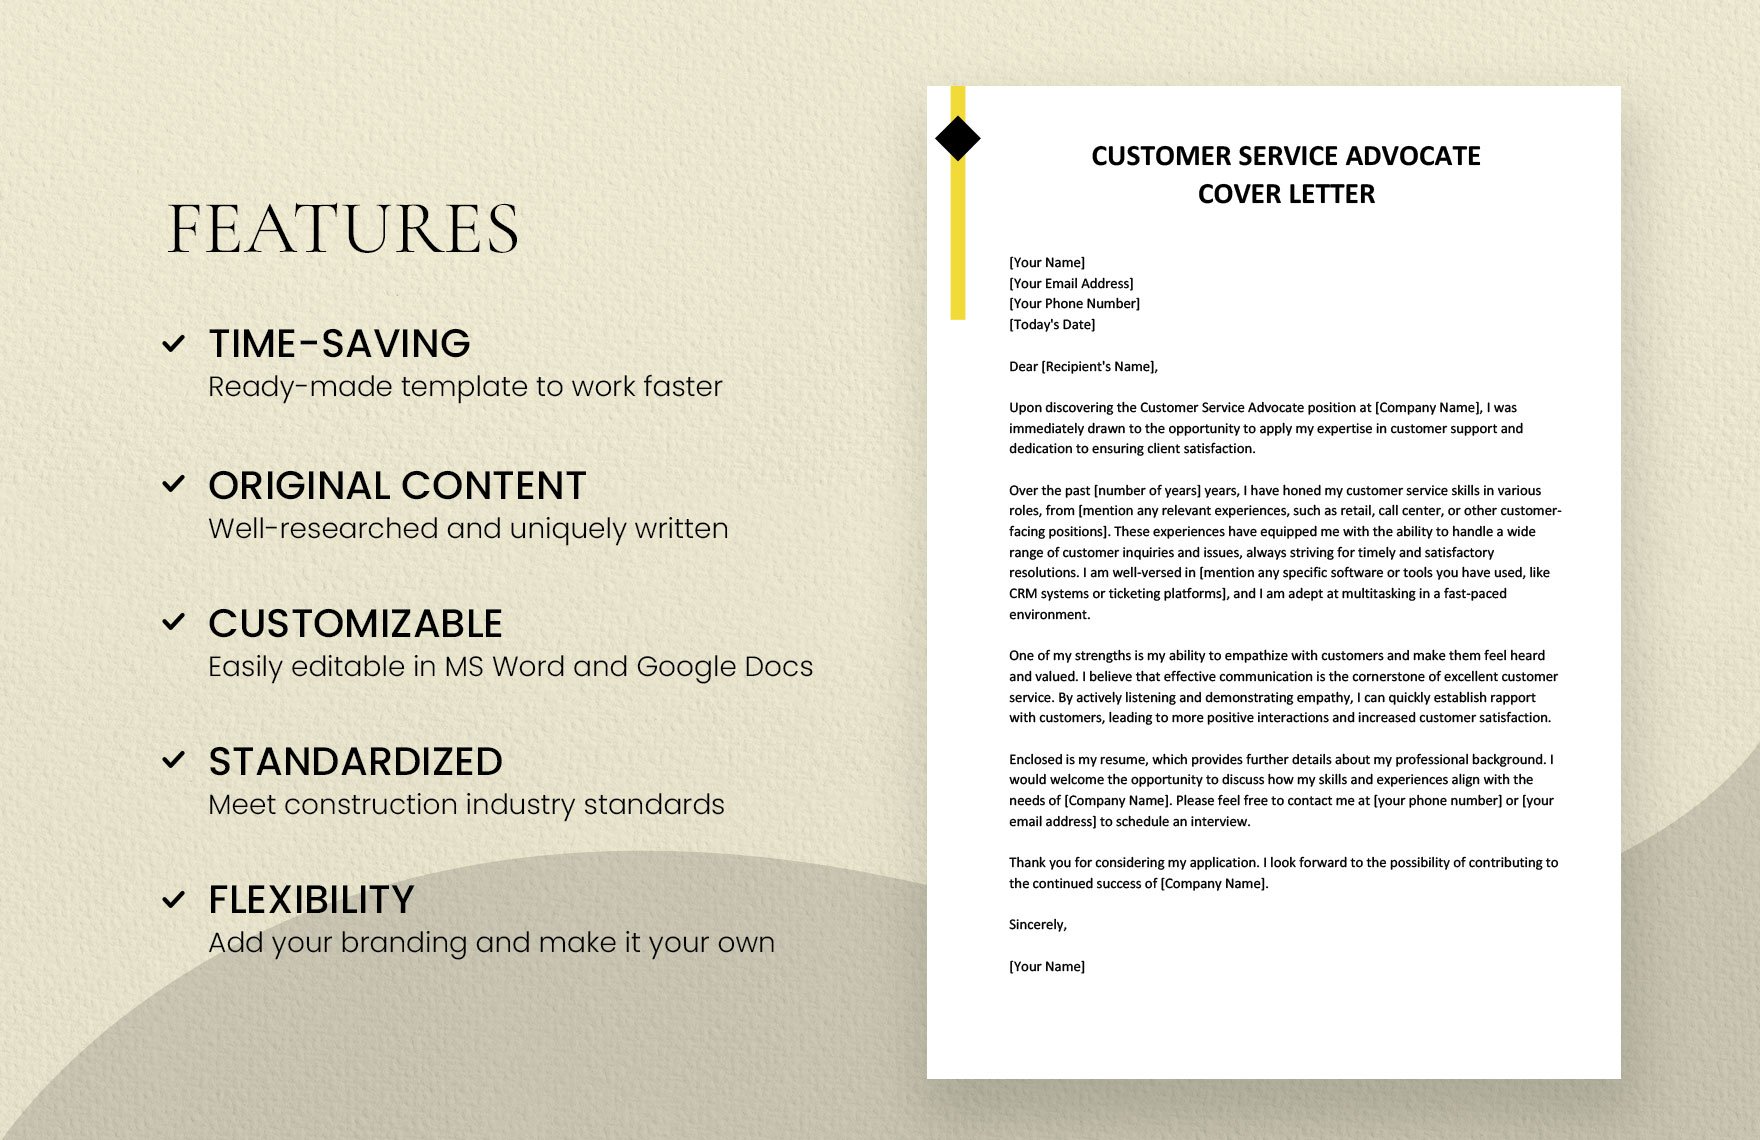 Customer Service Advocate Cover Letter